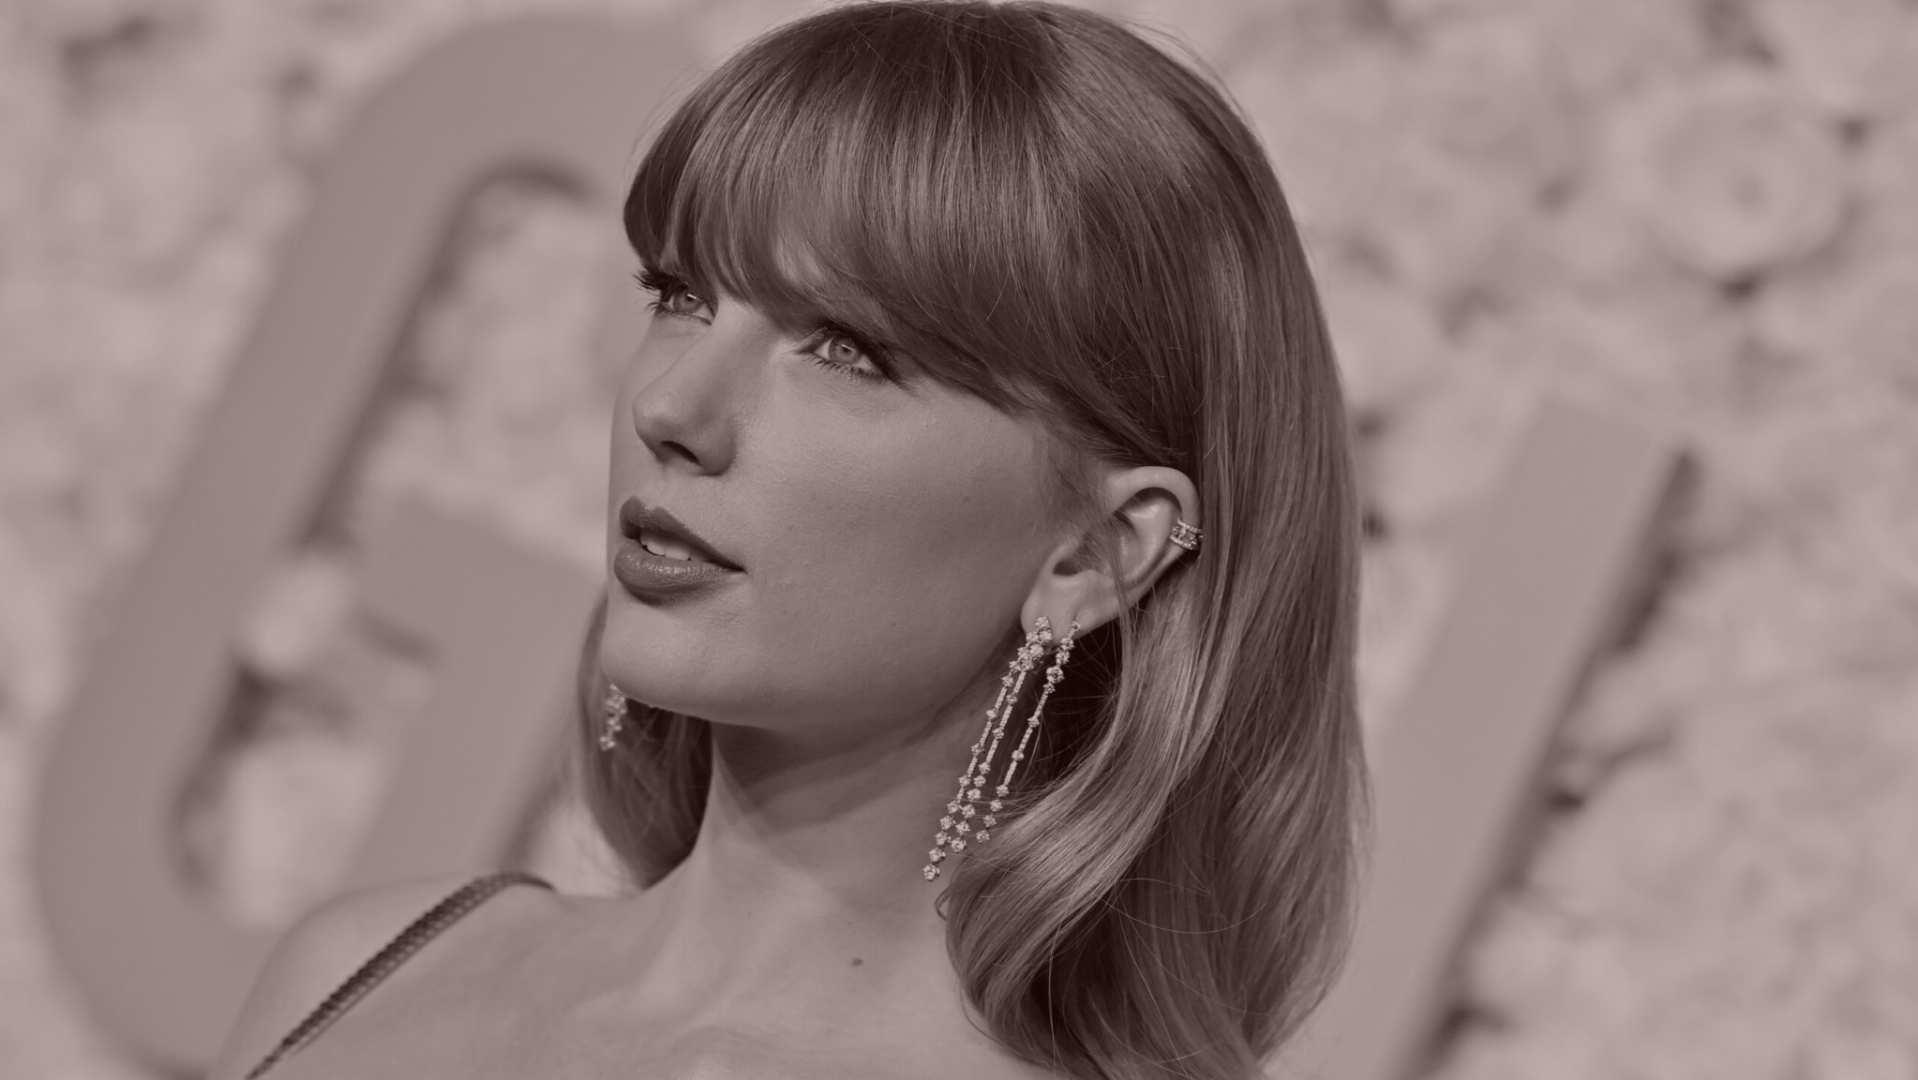 The Taylor Swift Deepfake Complexifier